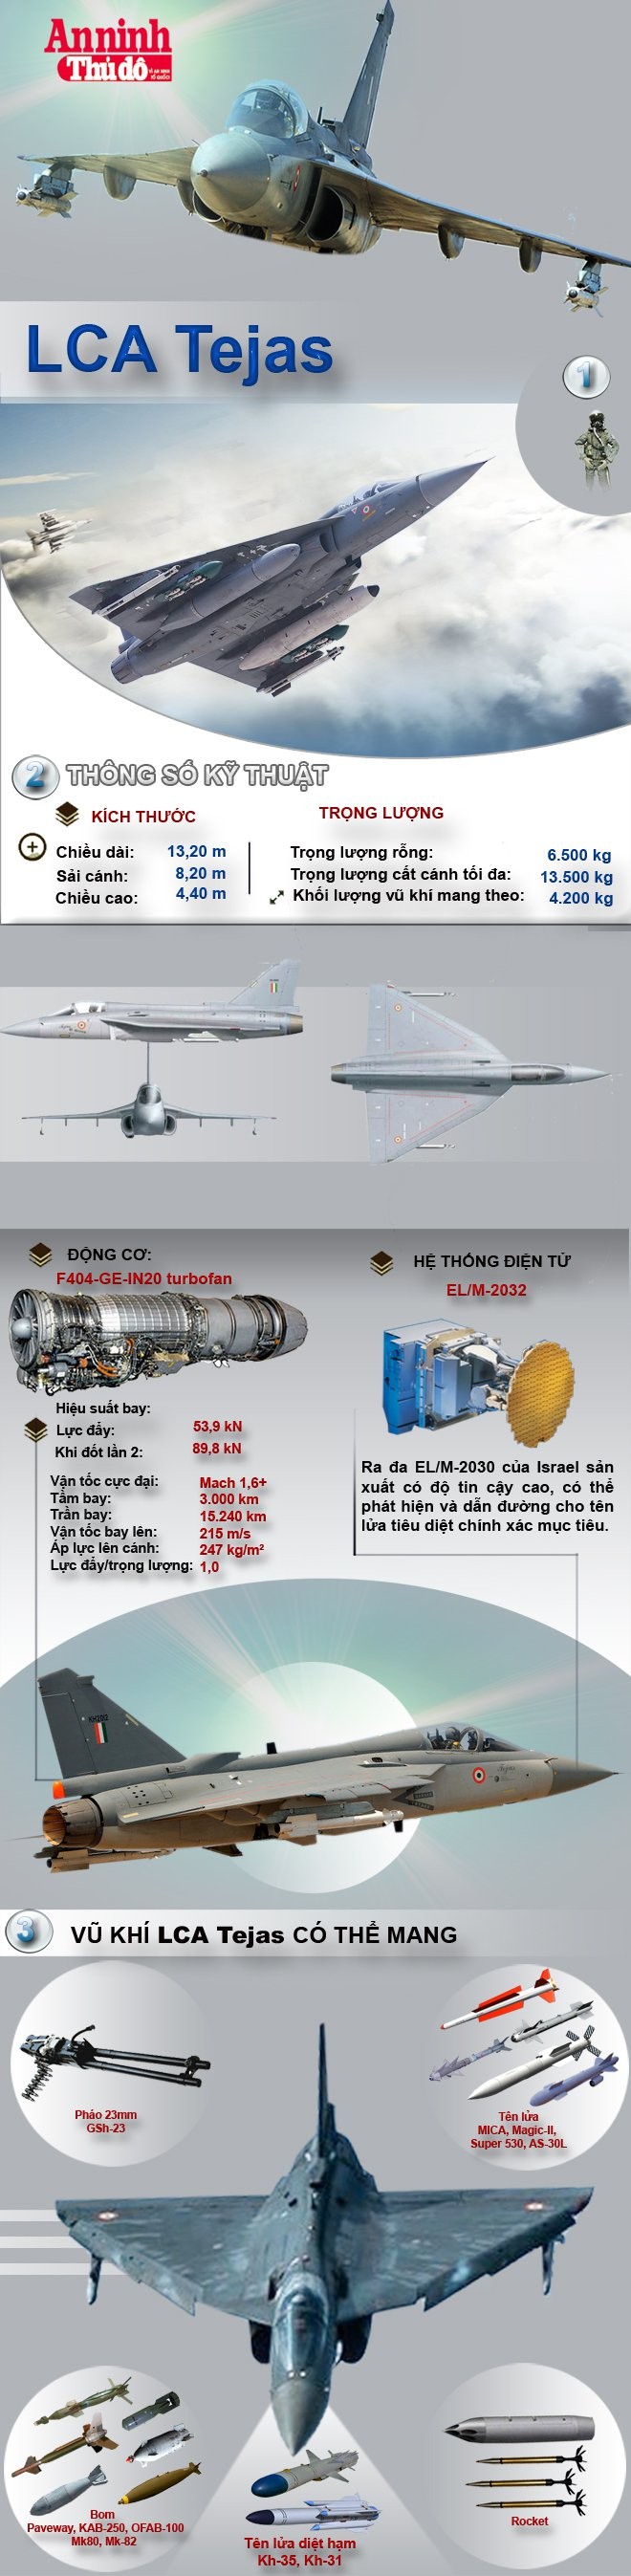 [Infographic] LCA Tejas – "Chiến binh" xuất sắc thay thế huyền thoại MiG-21 của Ấn Độ